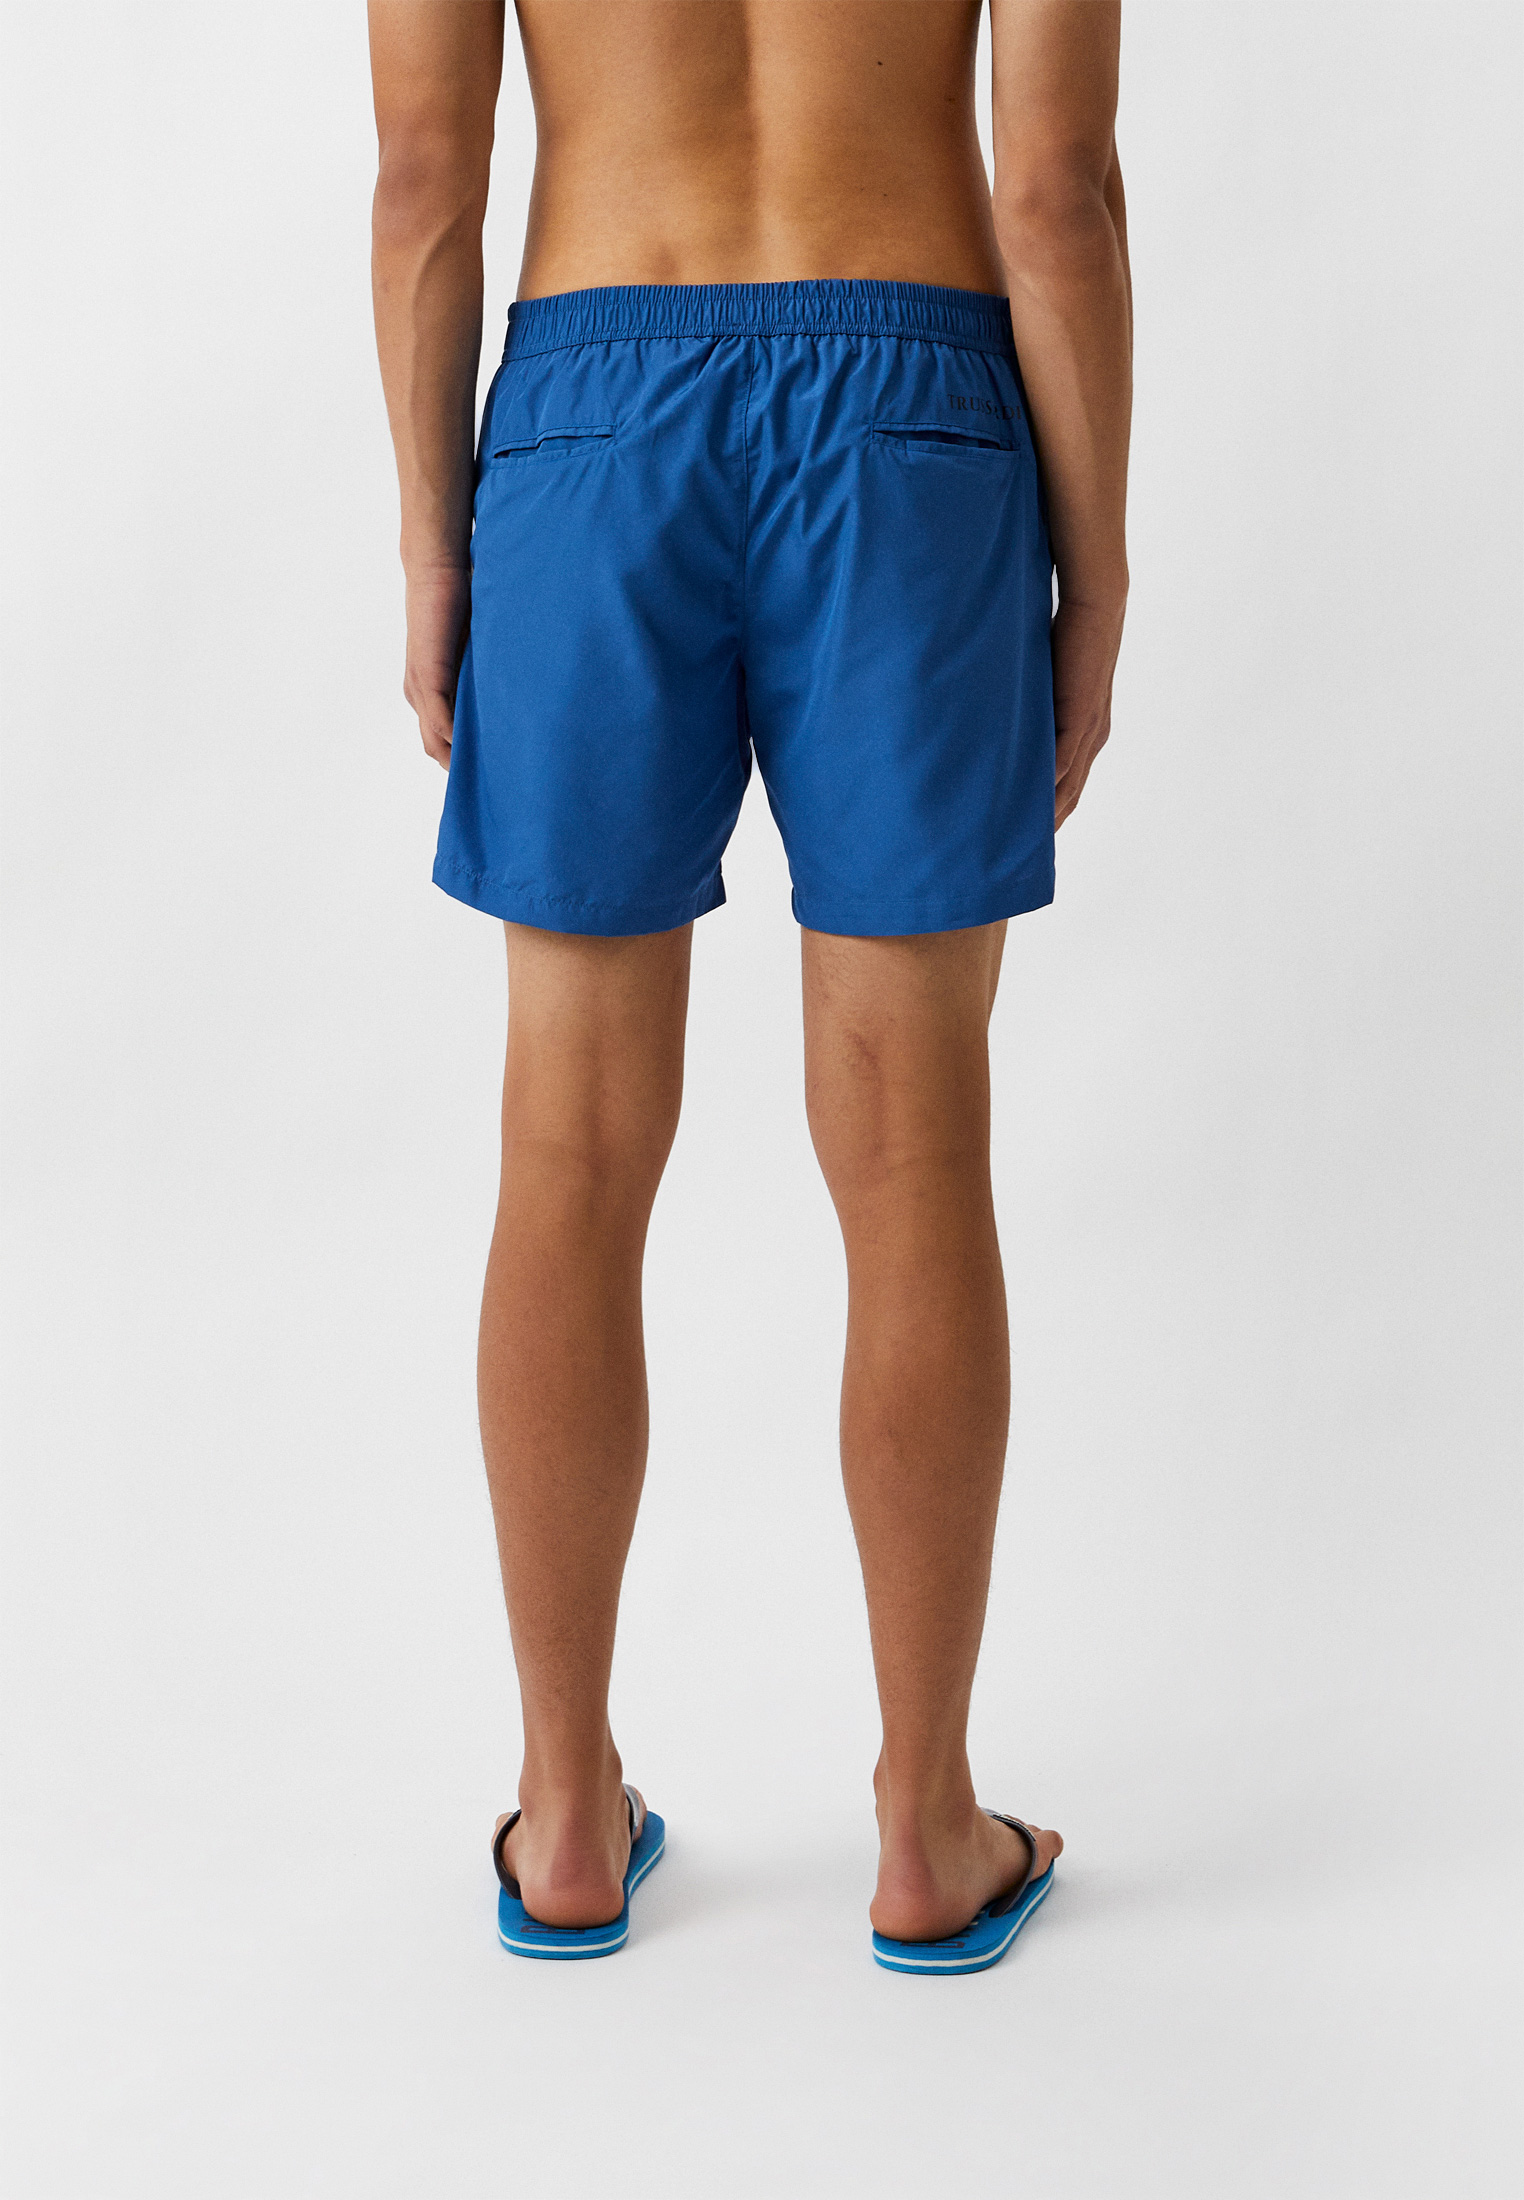 Мужские шорты для плавания Trussardi (Труссарди) TRU1MBM01: изображение 2